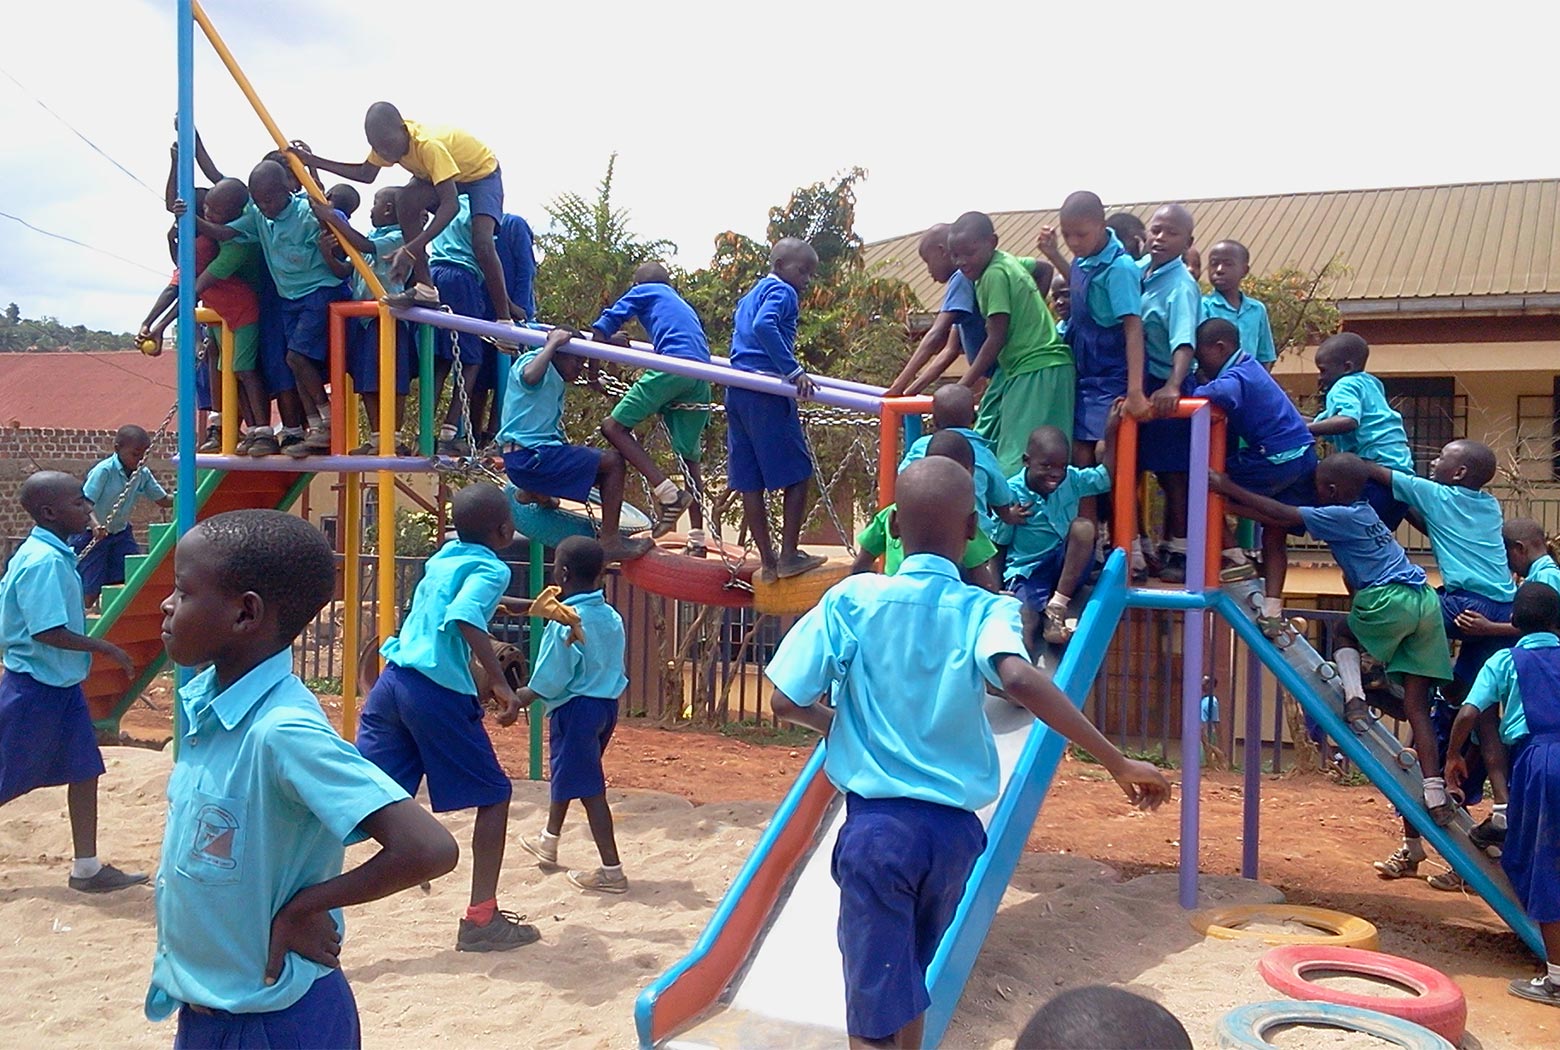 New playground at Kamwoyka Primary School in Kampala, Uganda